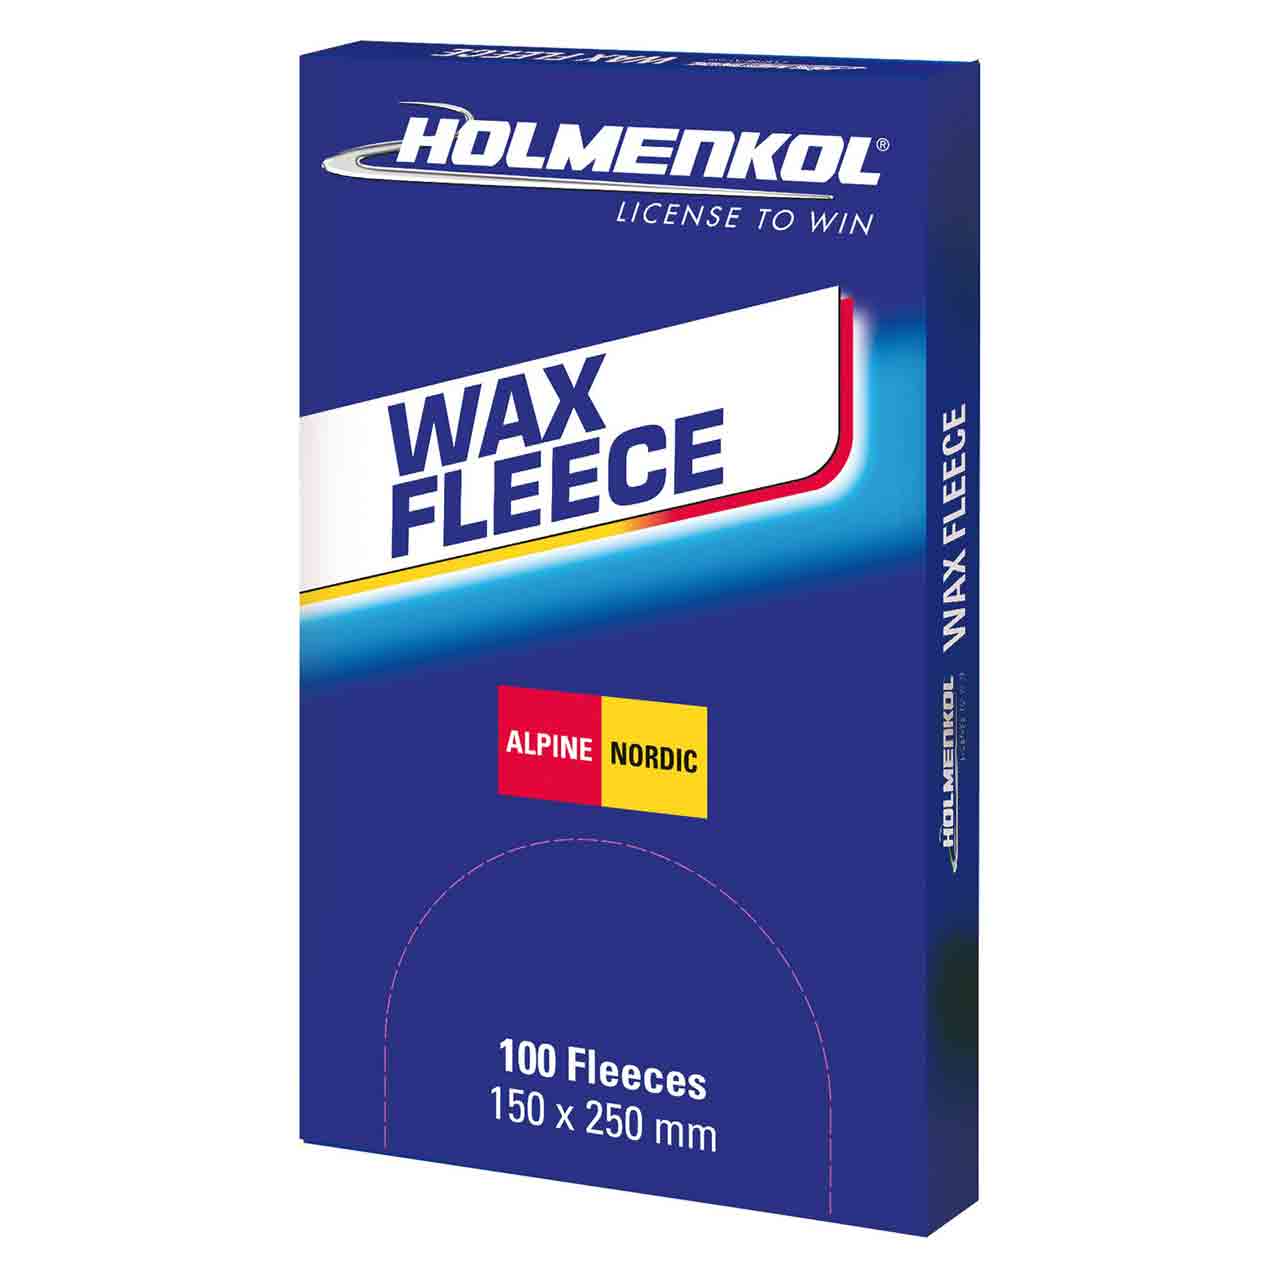 Wax Fleece Inhalt 100 Stk.